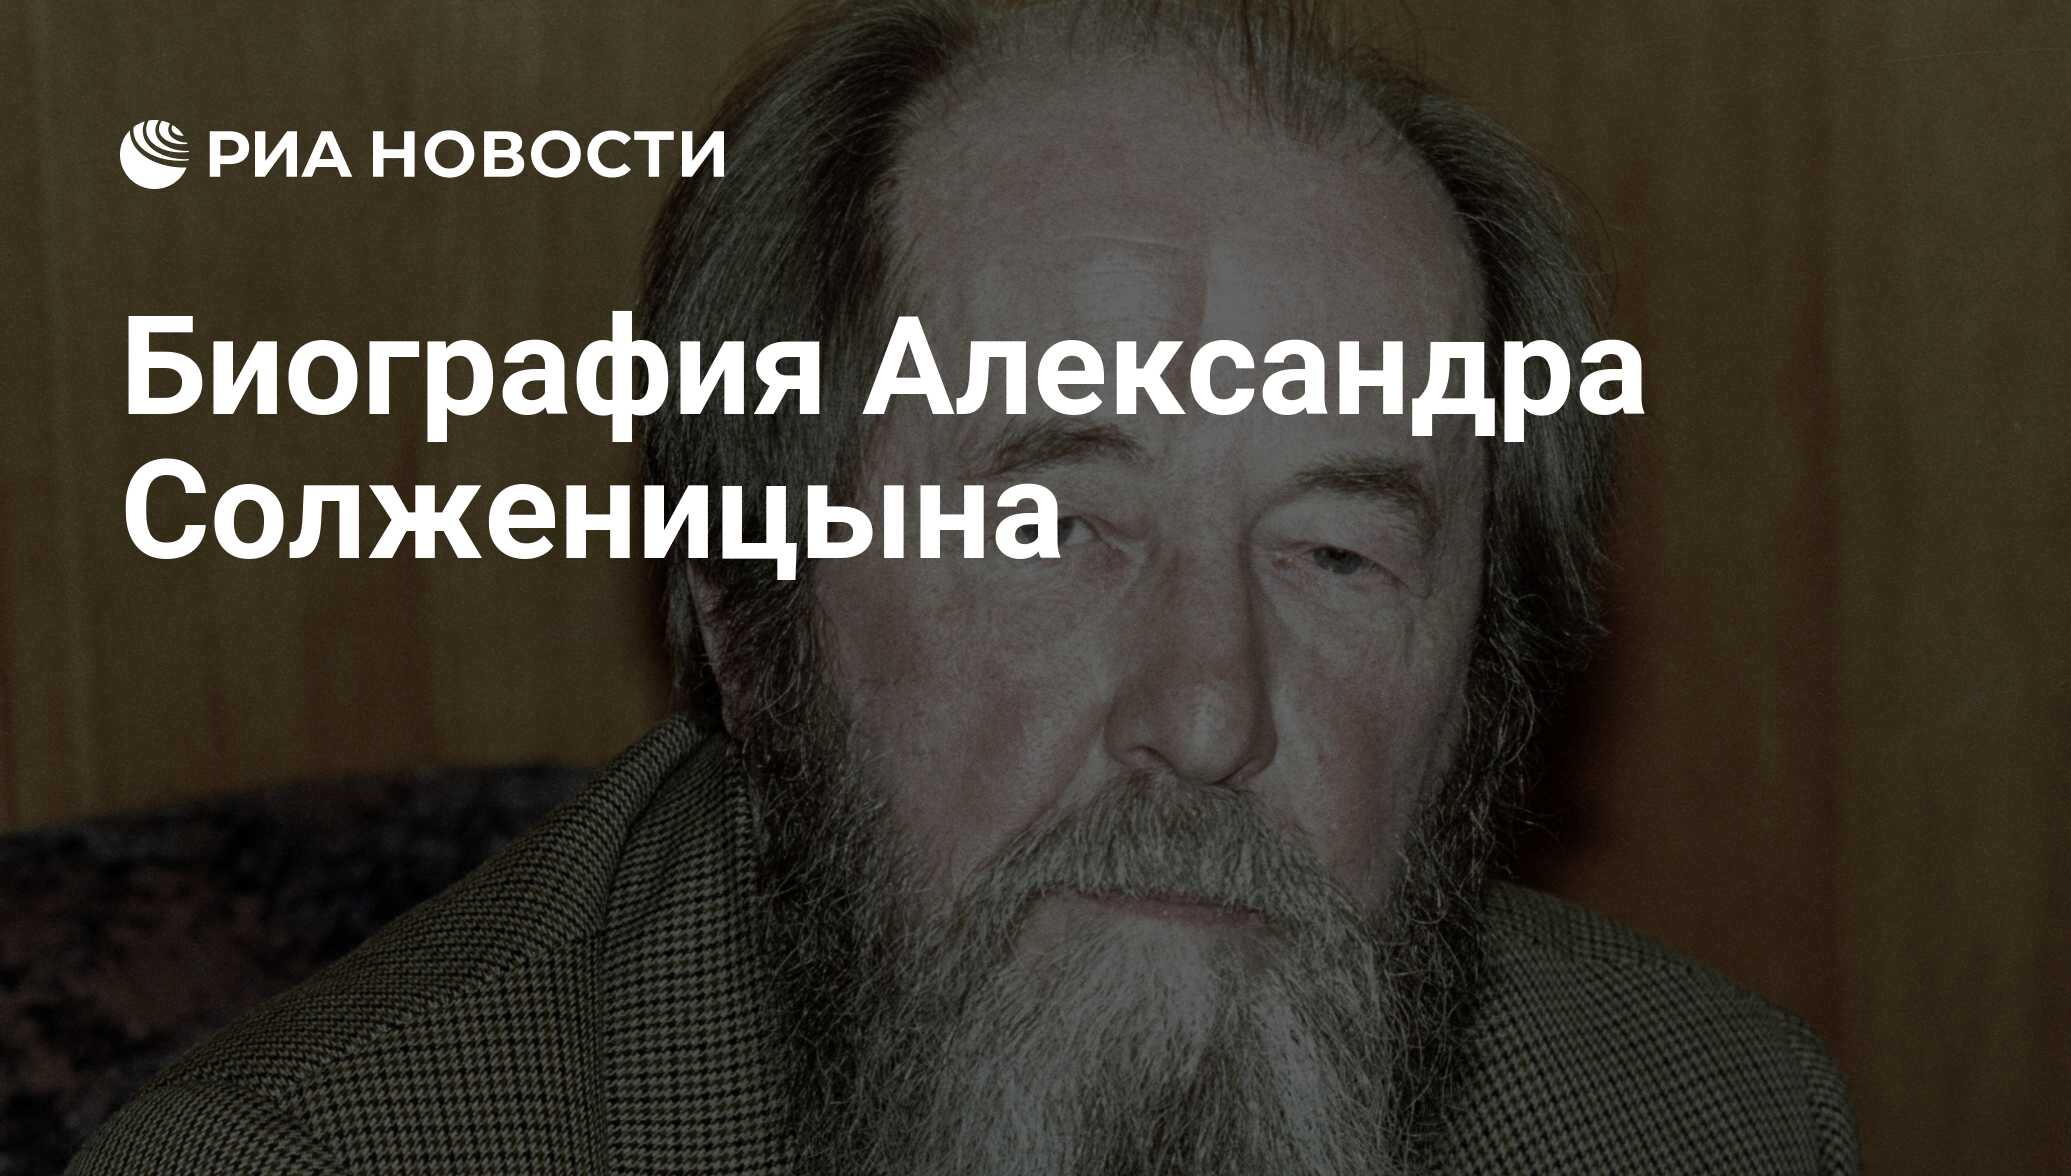 Биография Александра Солженицына - РИА Новости, 01.03.2020